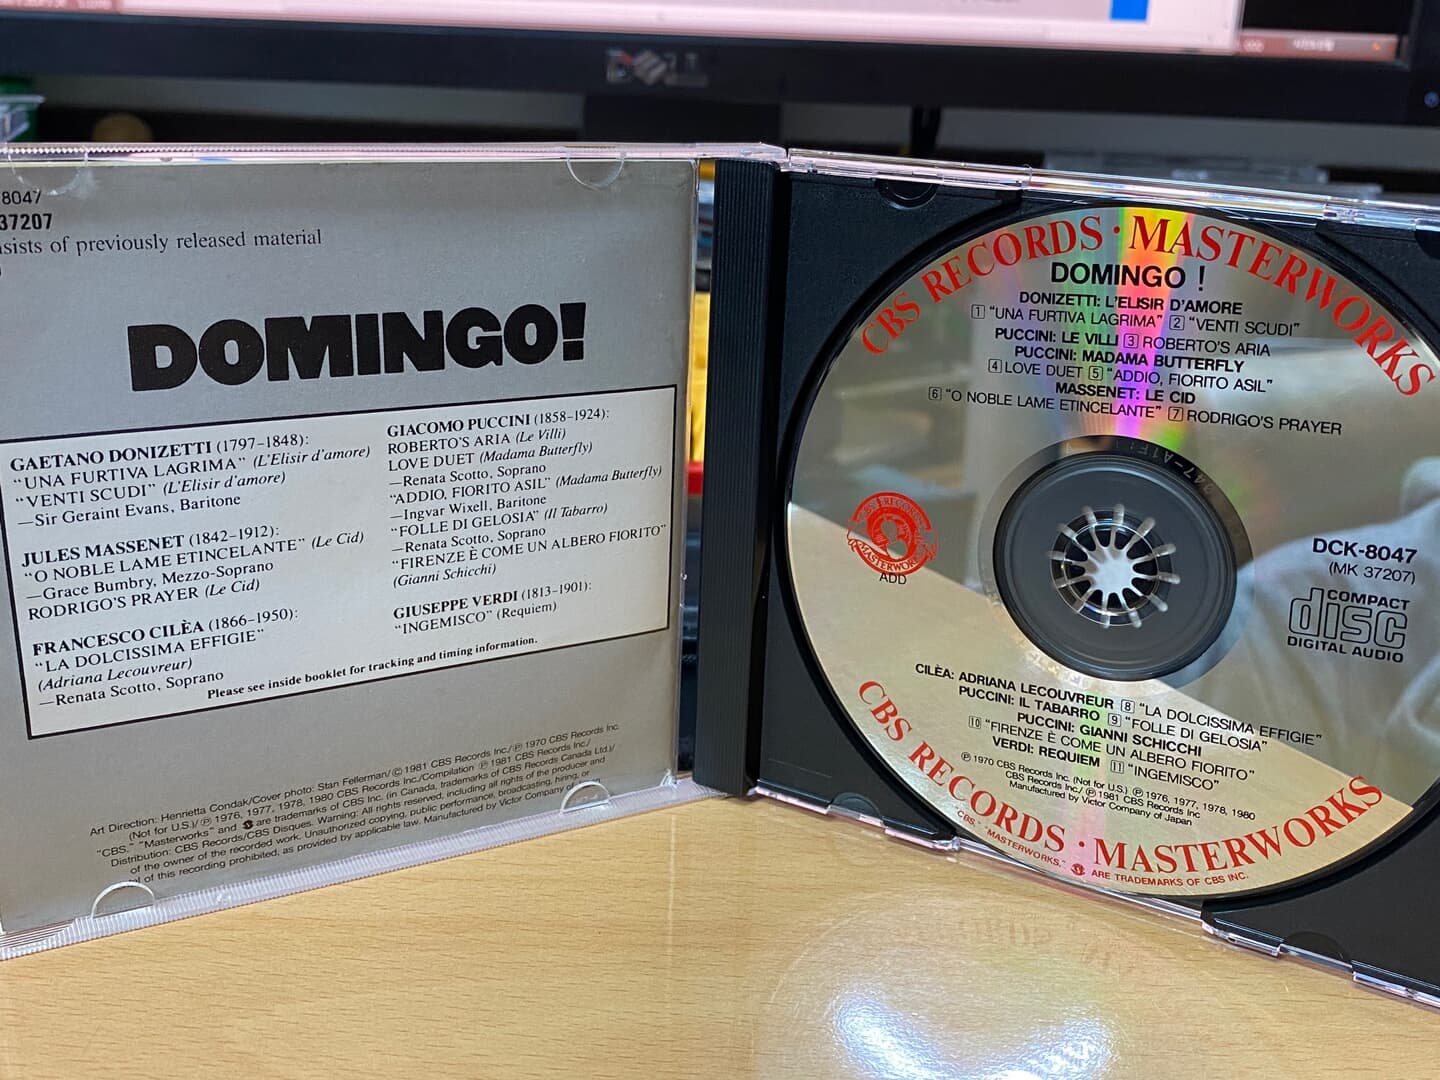 플라시도 도밍고 - Placido Domingo - Domingo! [일본발매]